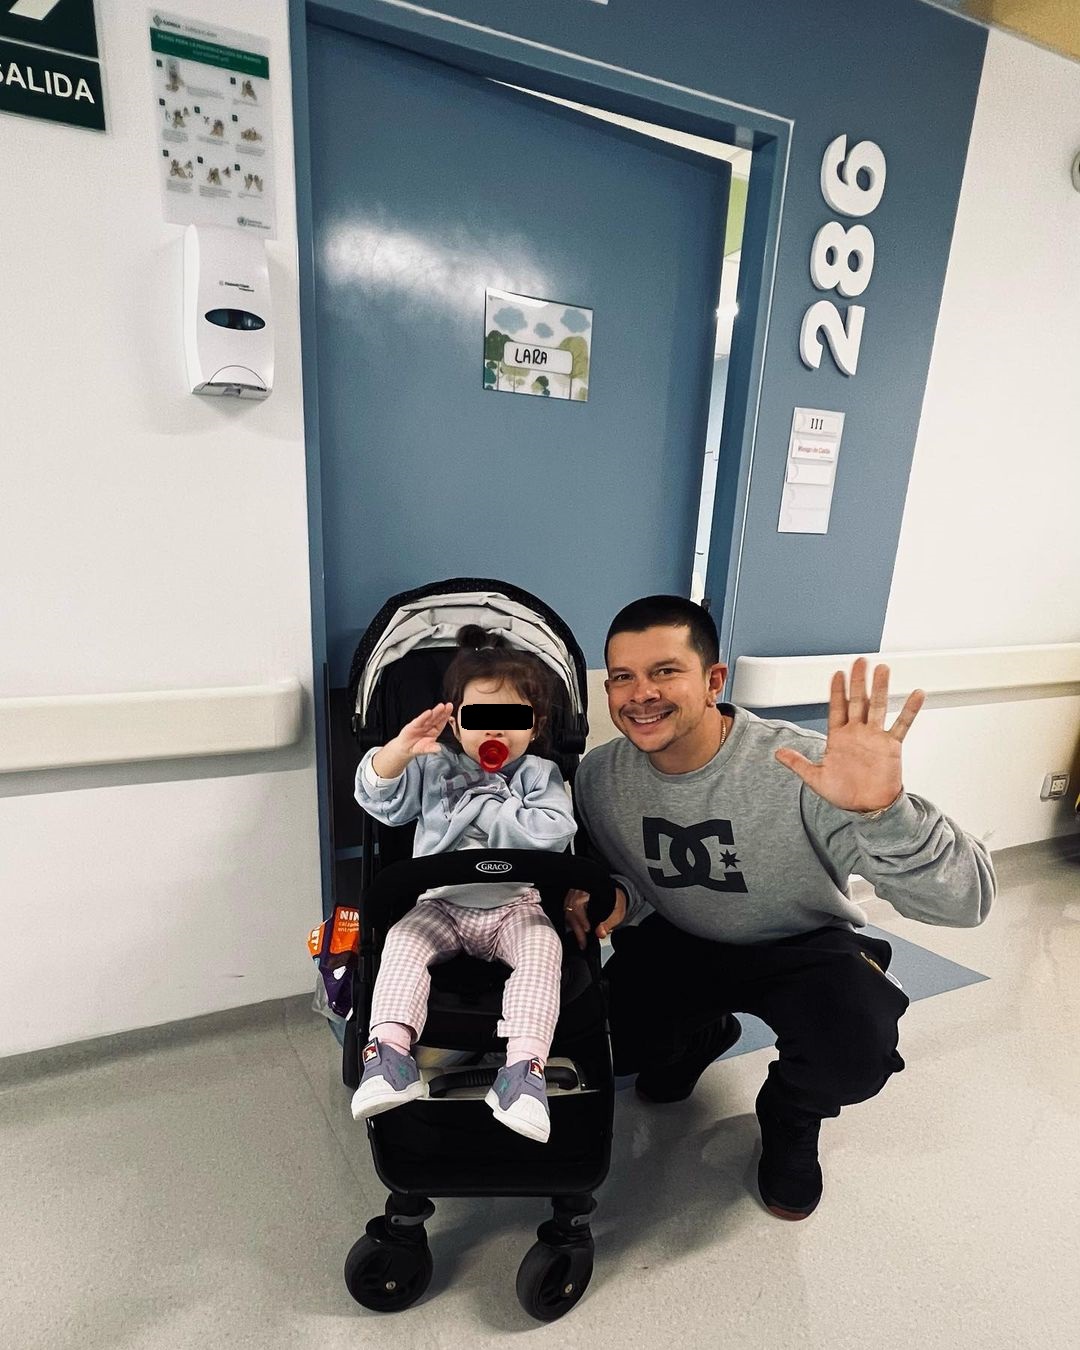 Mario Hart sale de alta con su pequeña de una clínica local. Foto: Instagram